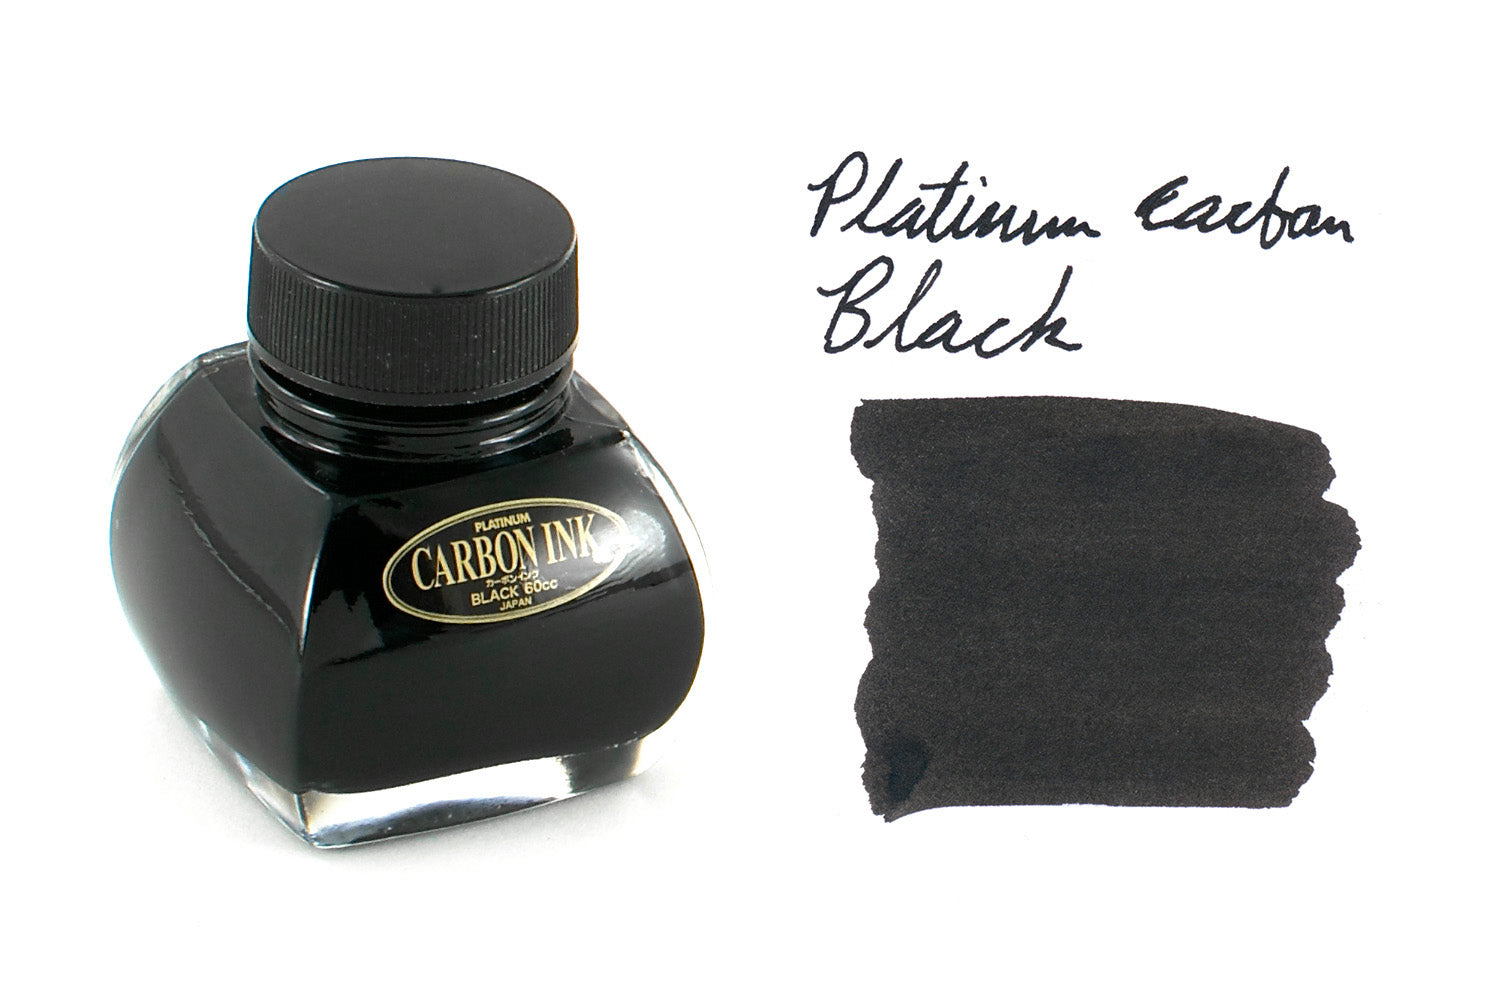  Platinum Black Ink - 60 ml Bottle